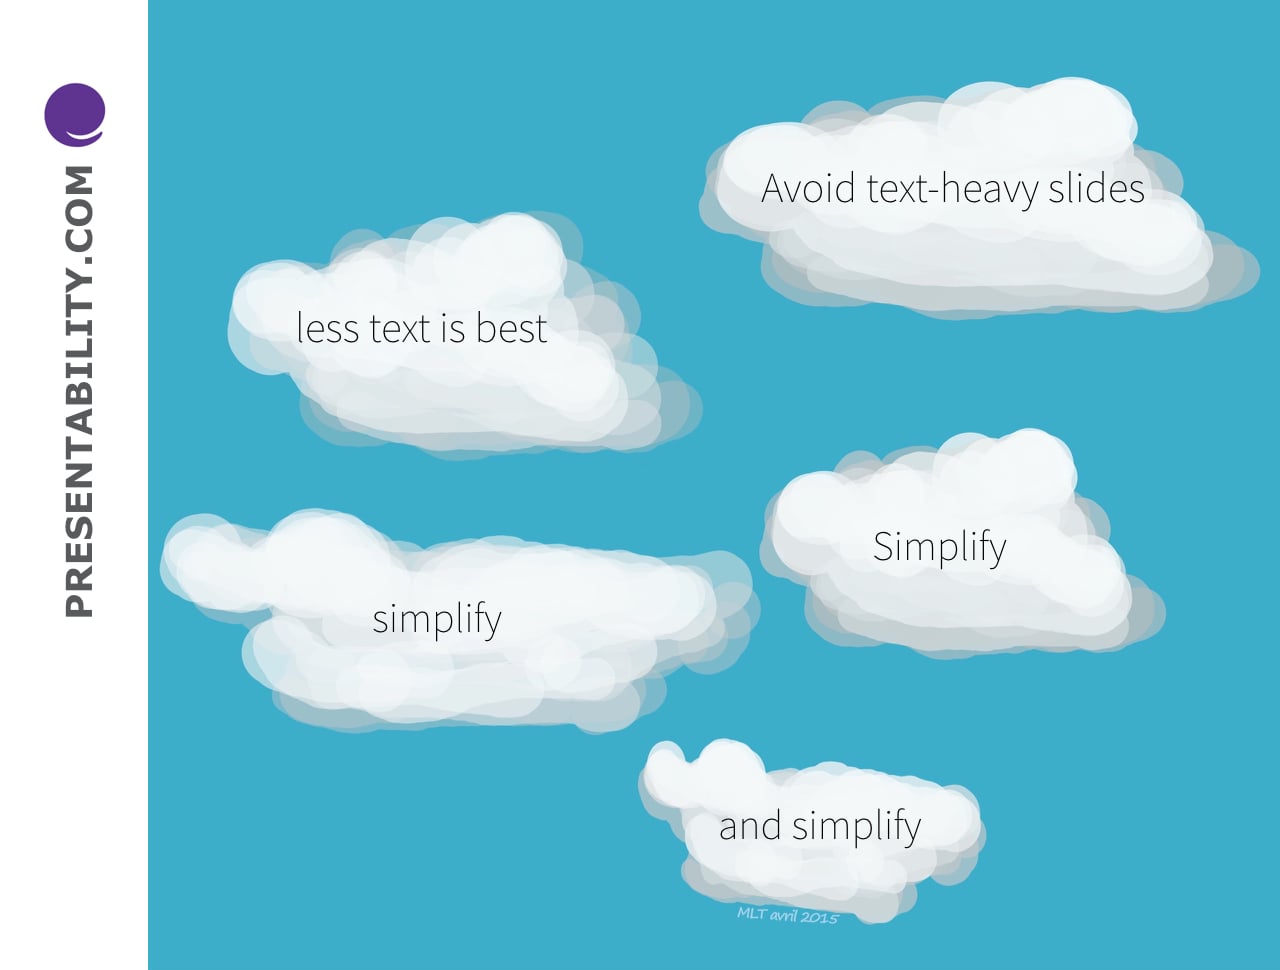 Avoid text-heavy slides